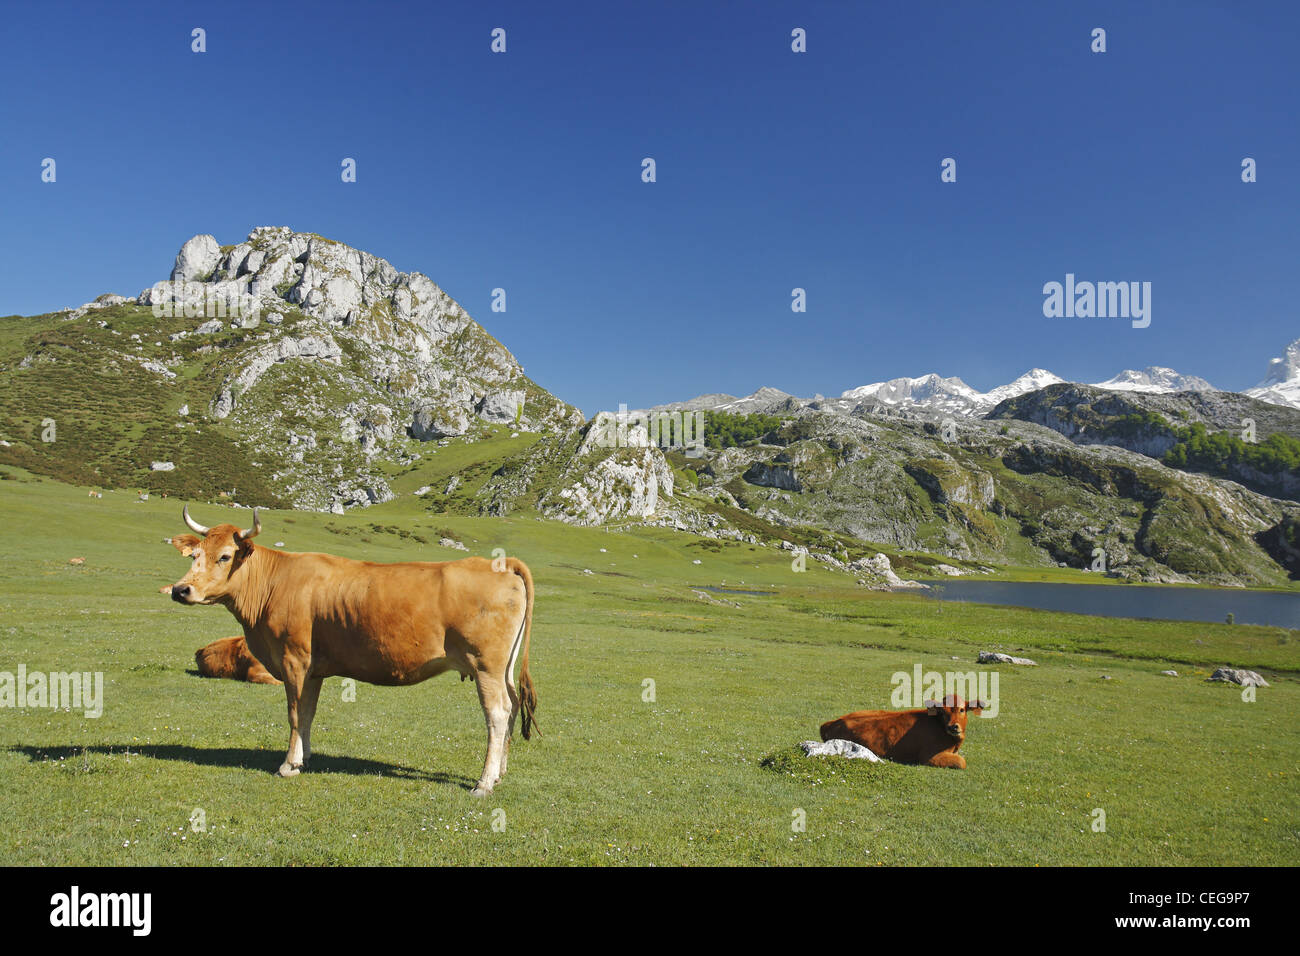 Les bovins de la vallée asturienne, Lago Ercina lac glaciaire, Lacs de Covadonga dans les Picos de Europa, Asturias, Espagne Banque D'Images